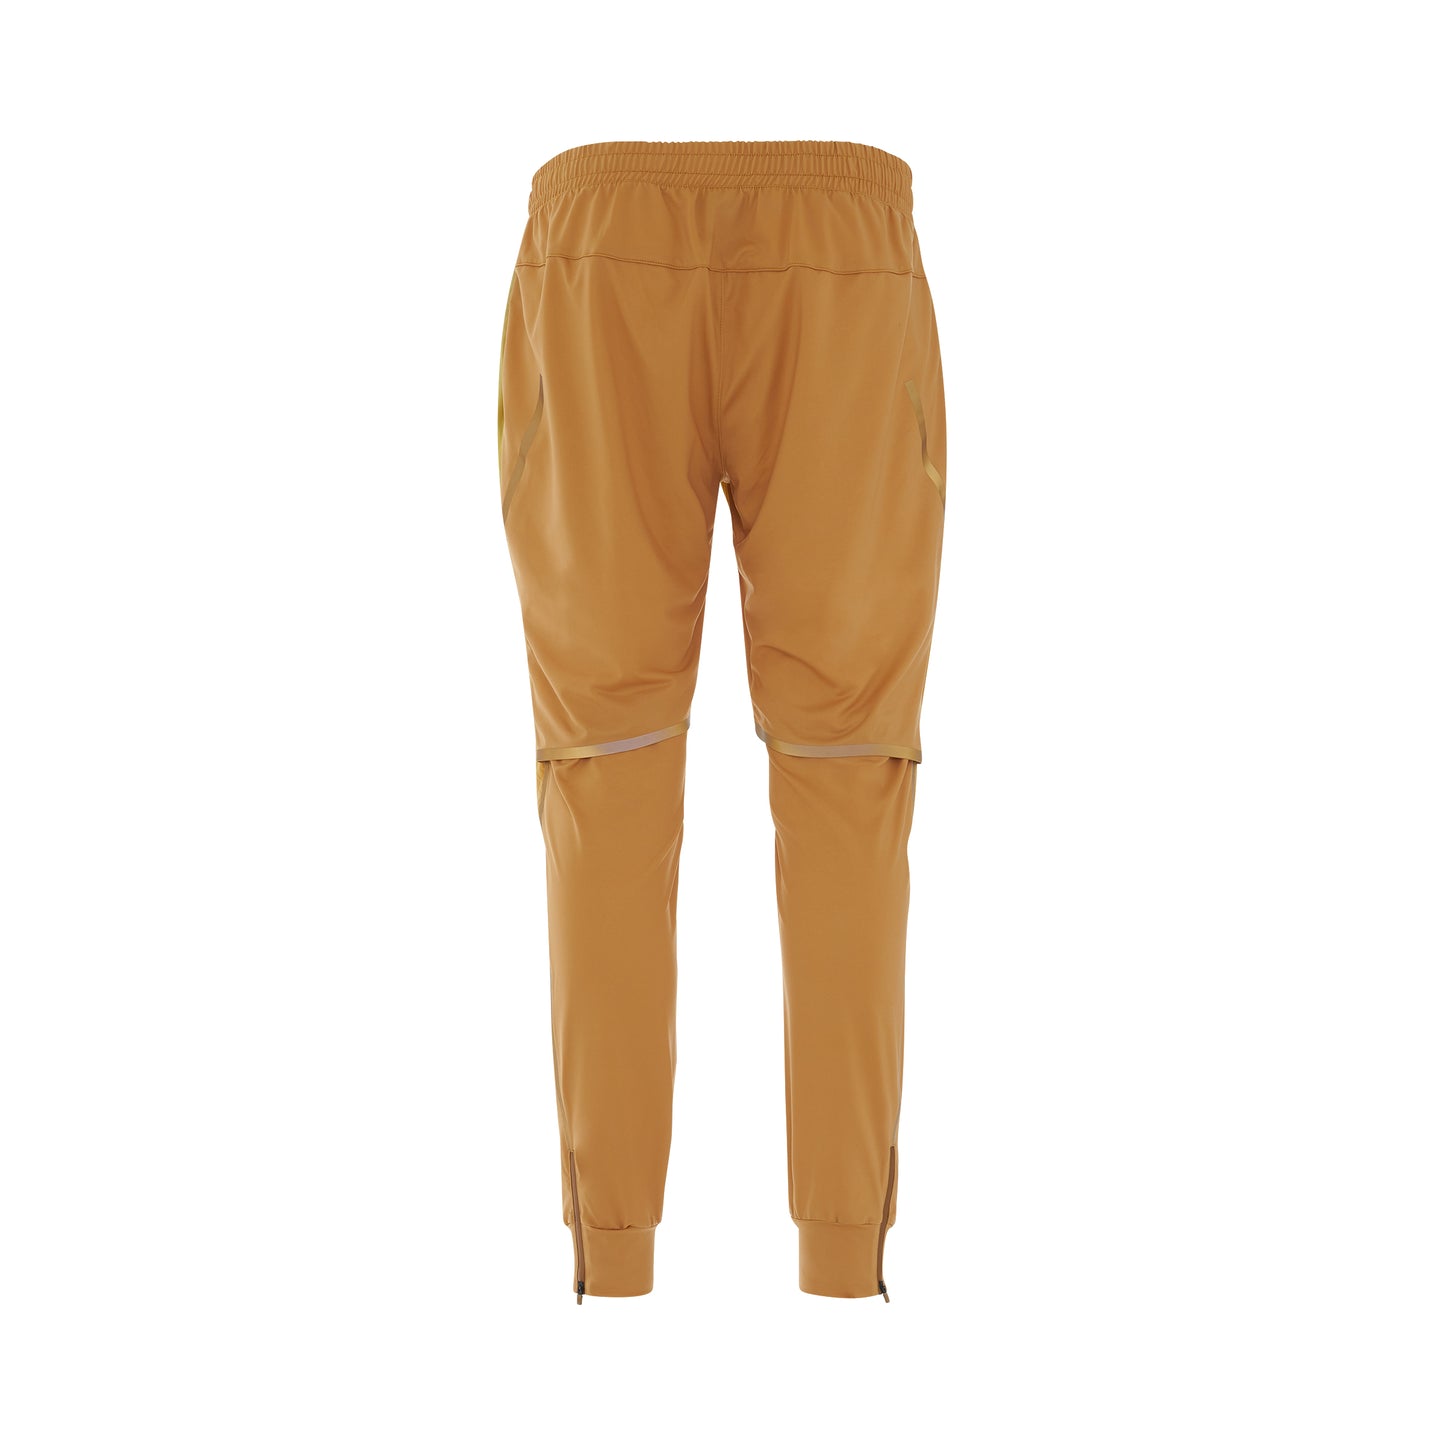 Loewe x ON Running Pants in Gradient Orange